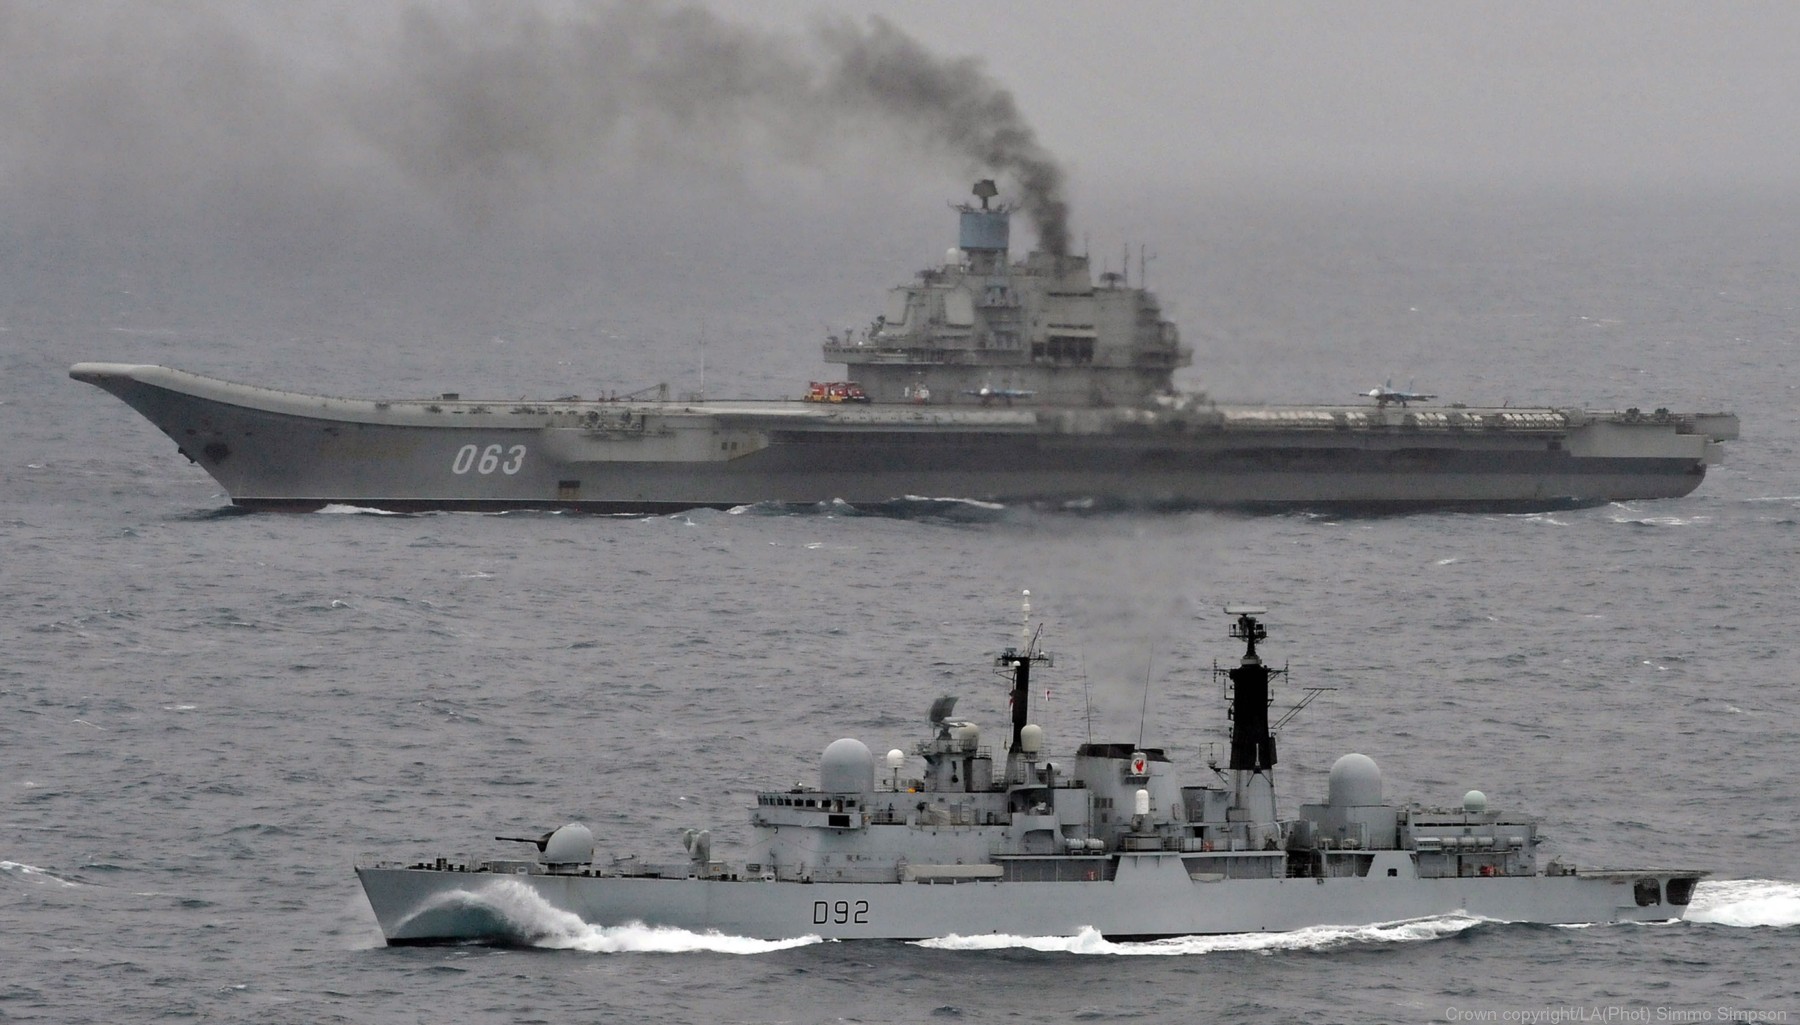 d92 hms liverpool rfs 063 admiral kuznetsov aircraft carrier russian navy